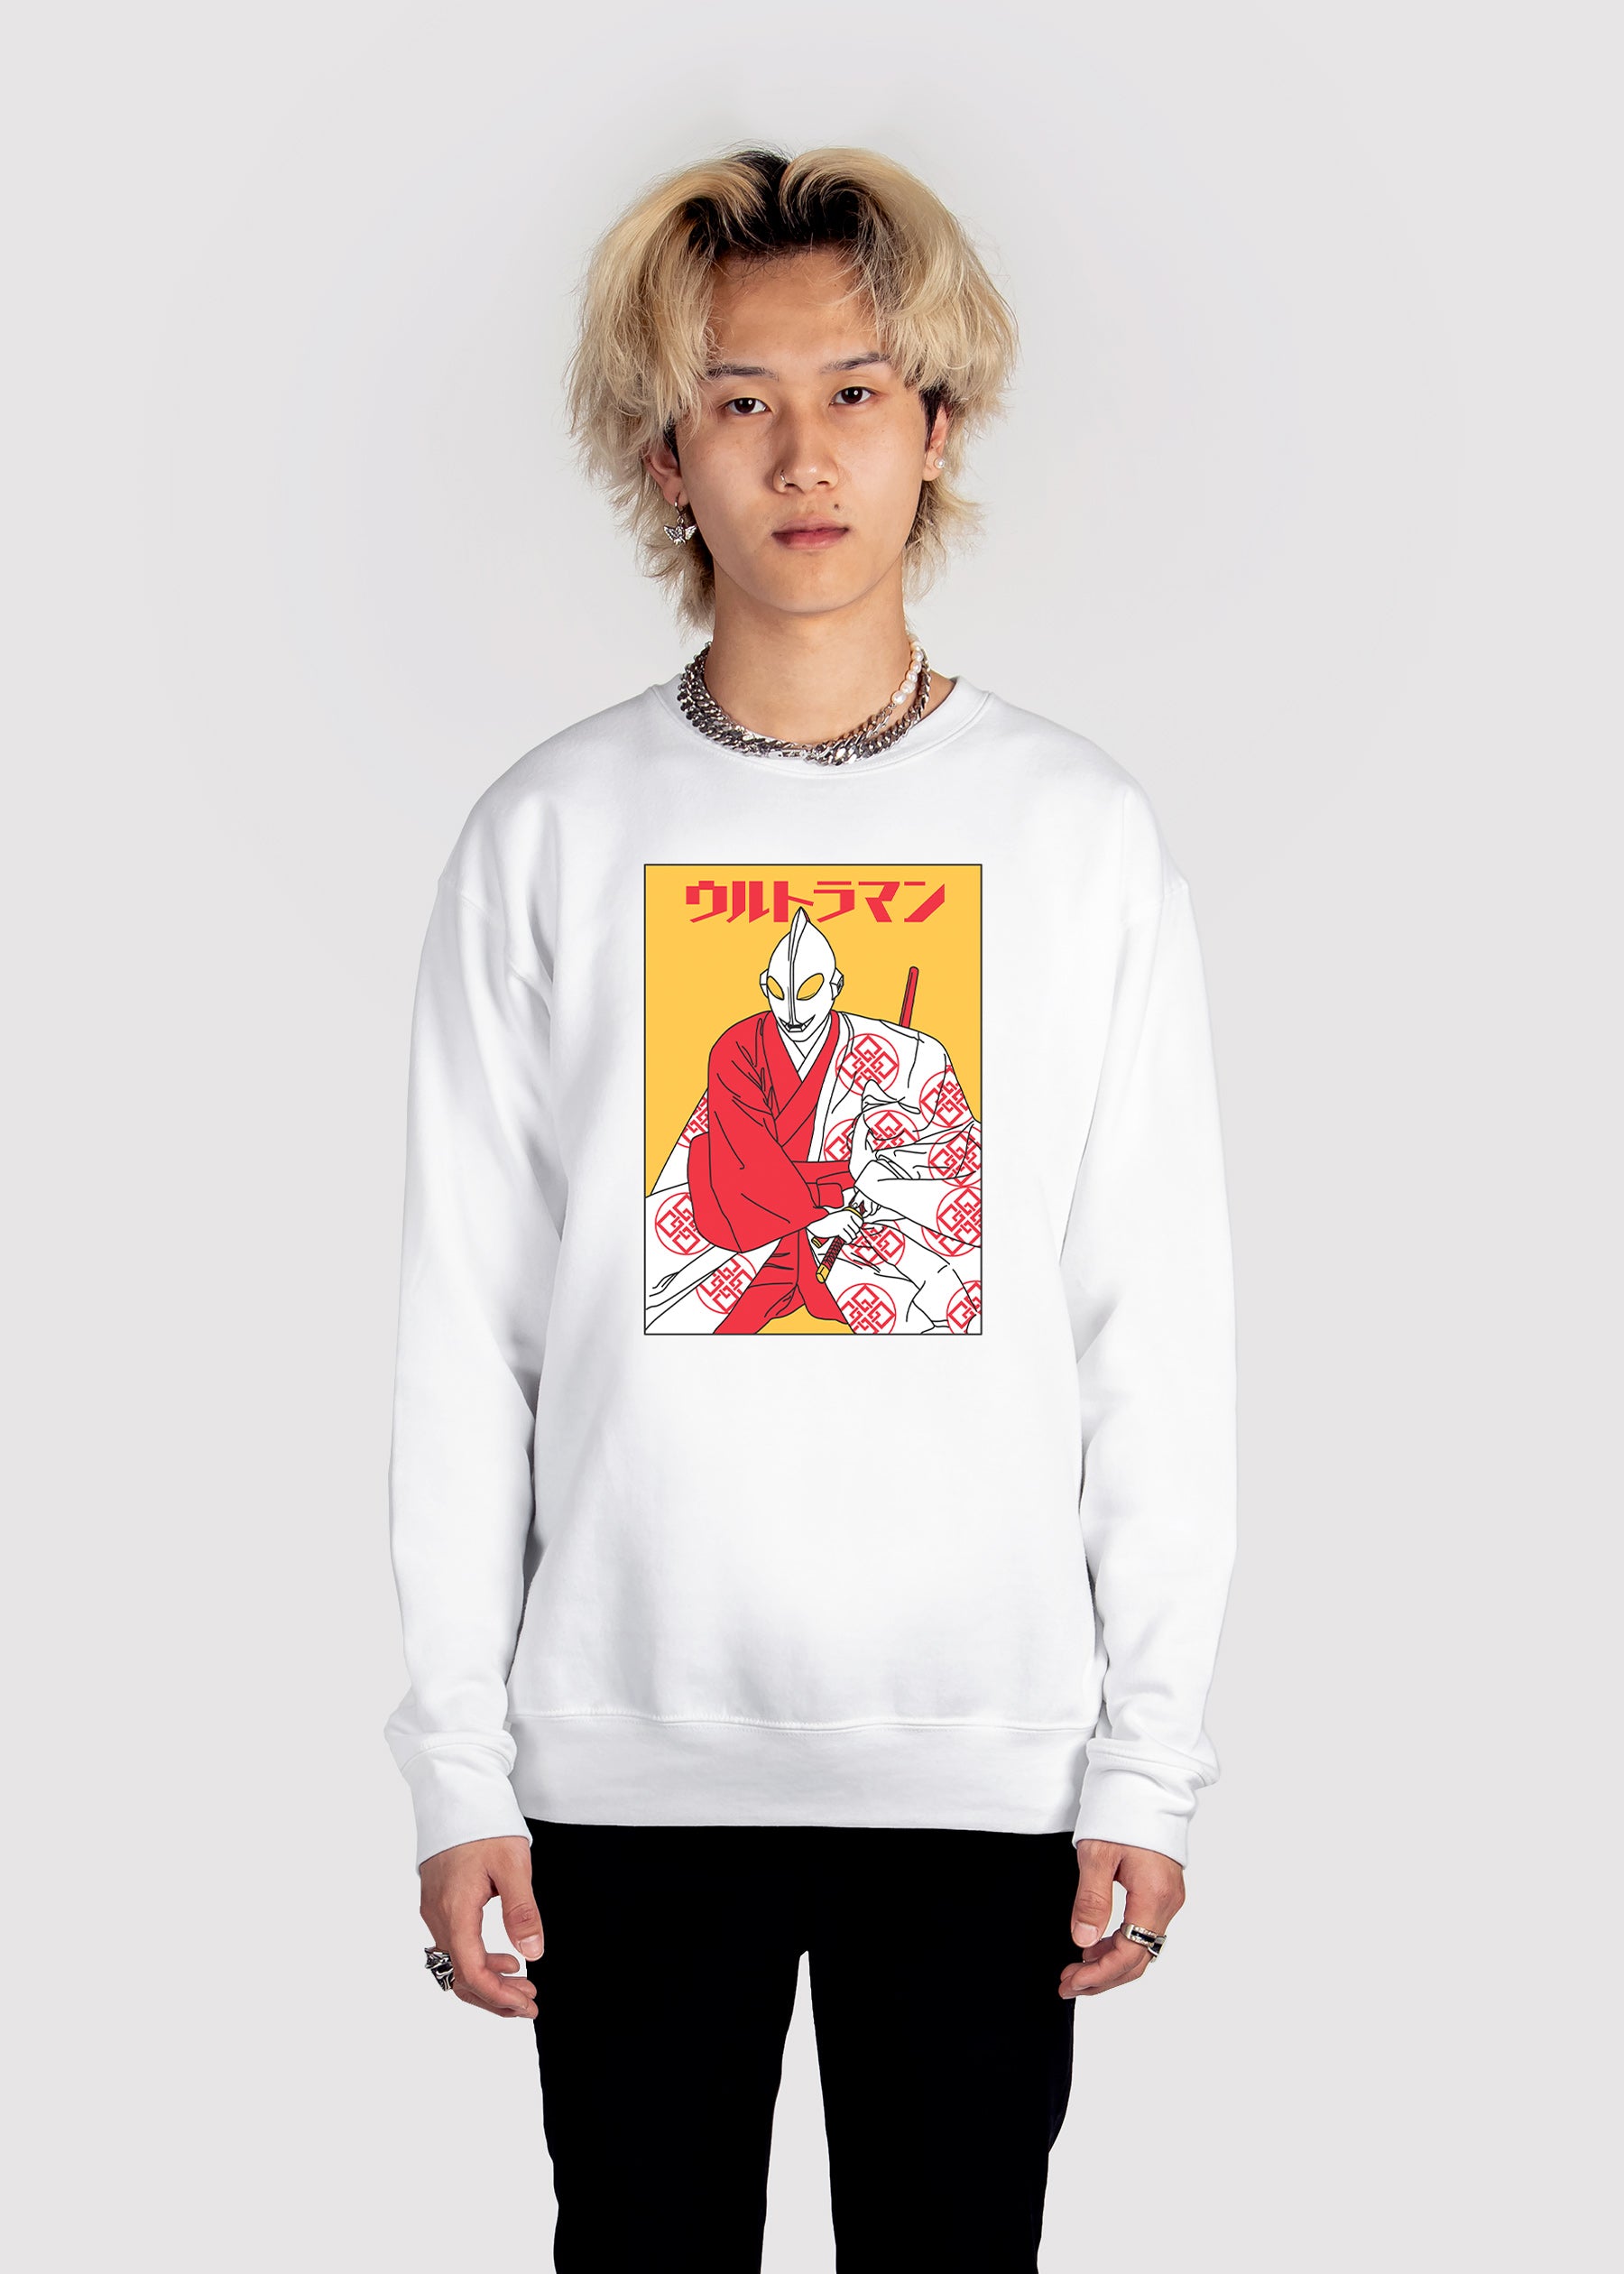 Samurai Ultraman Sweatshirt